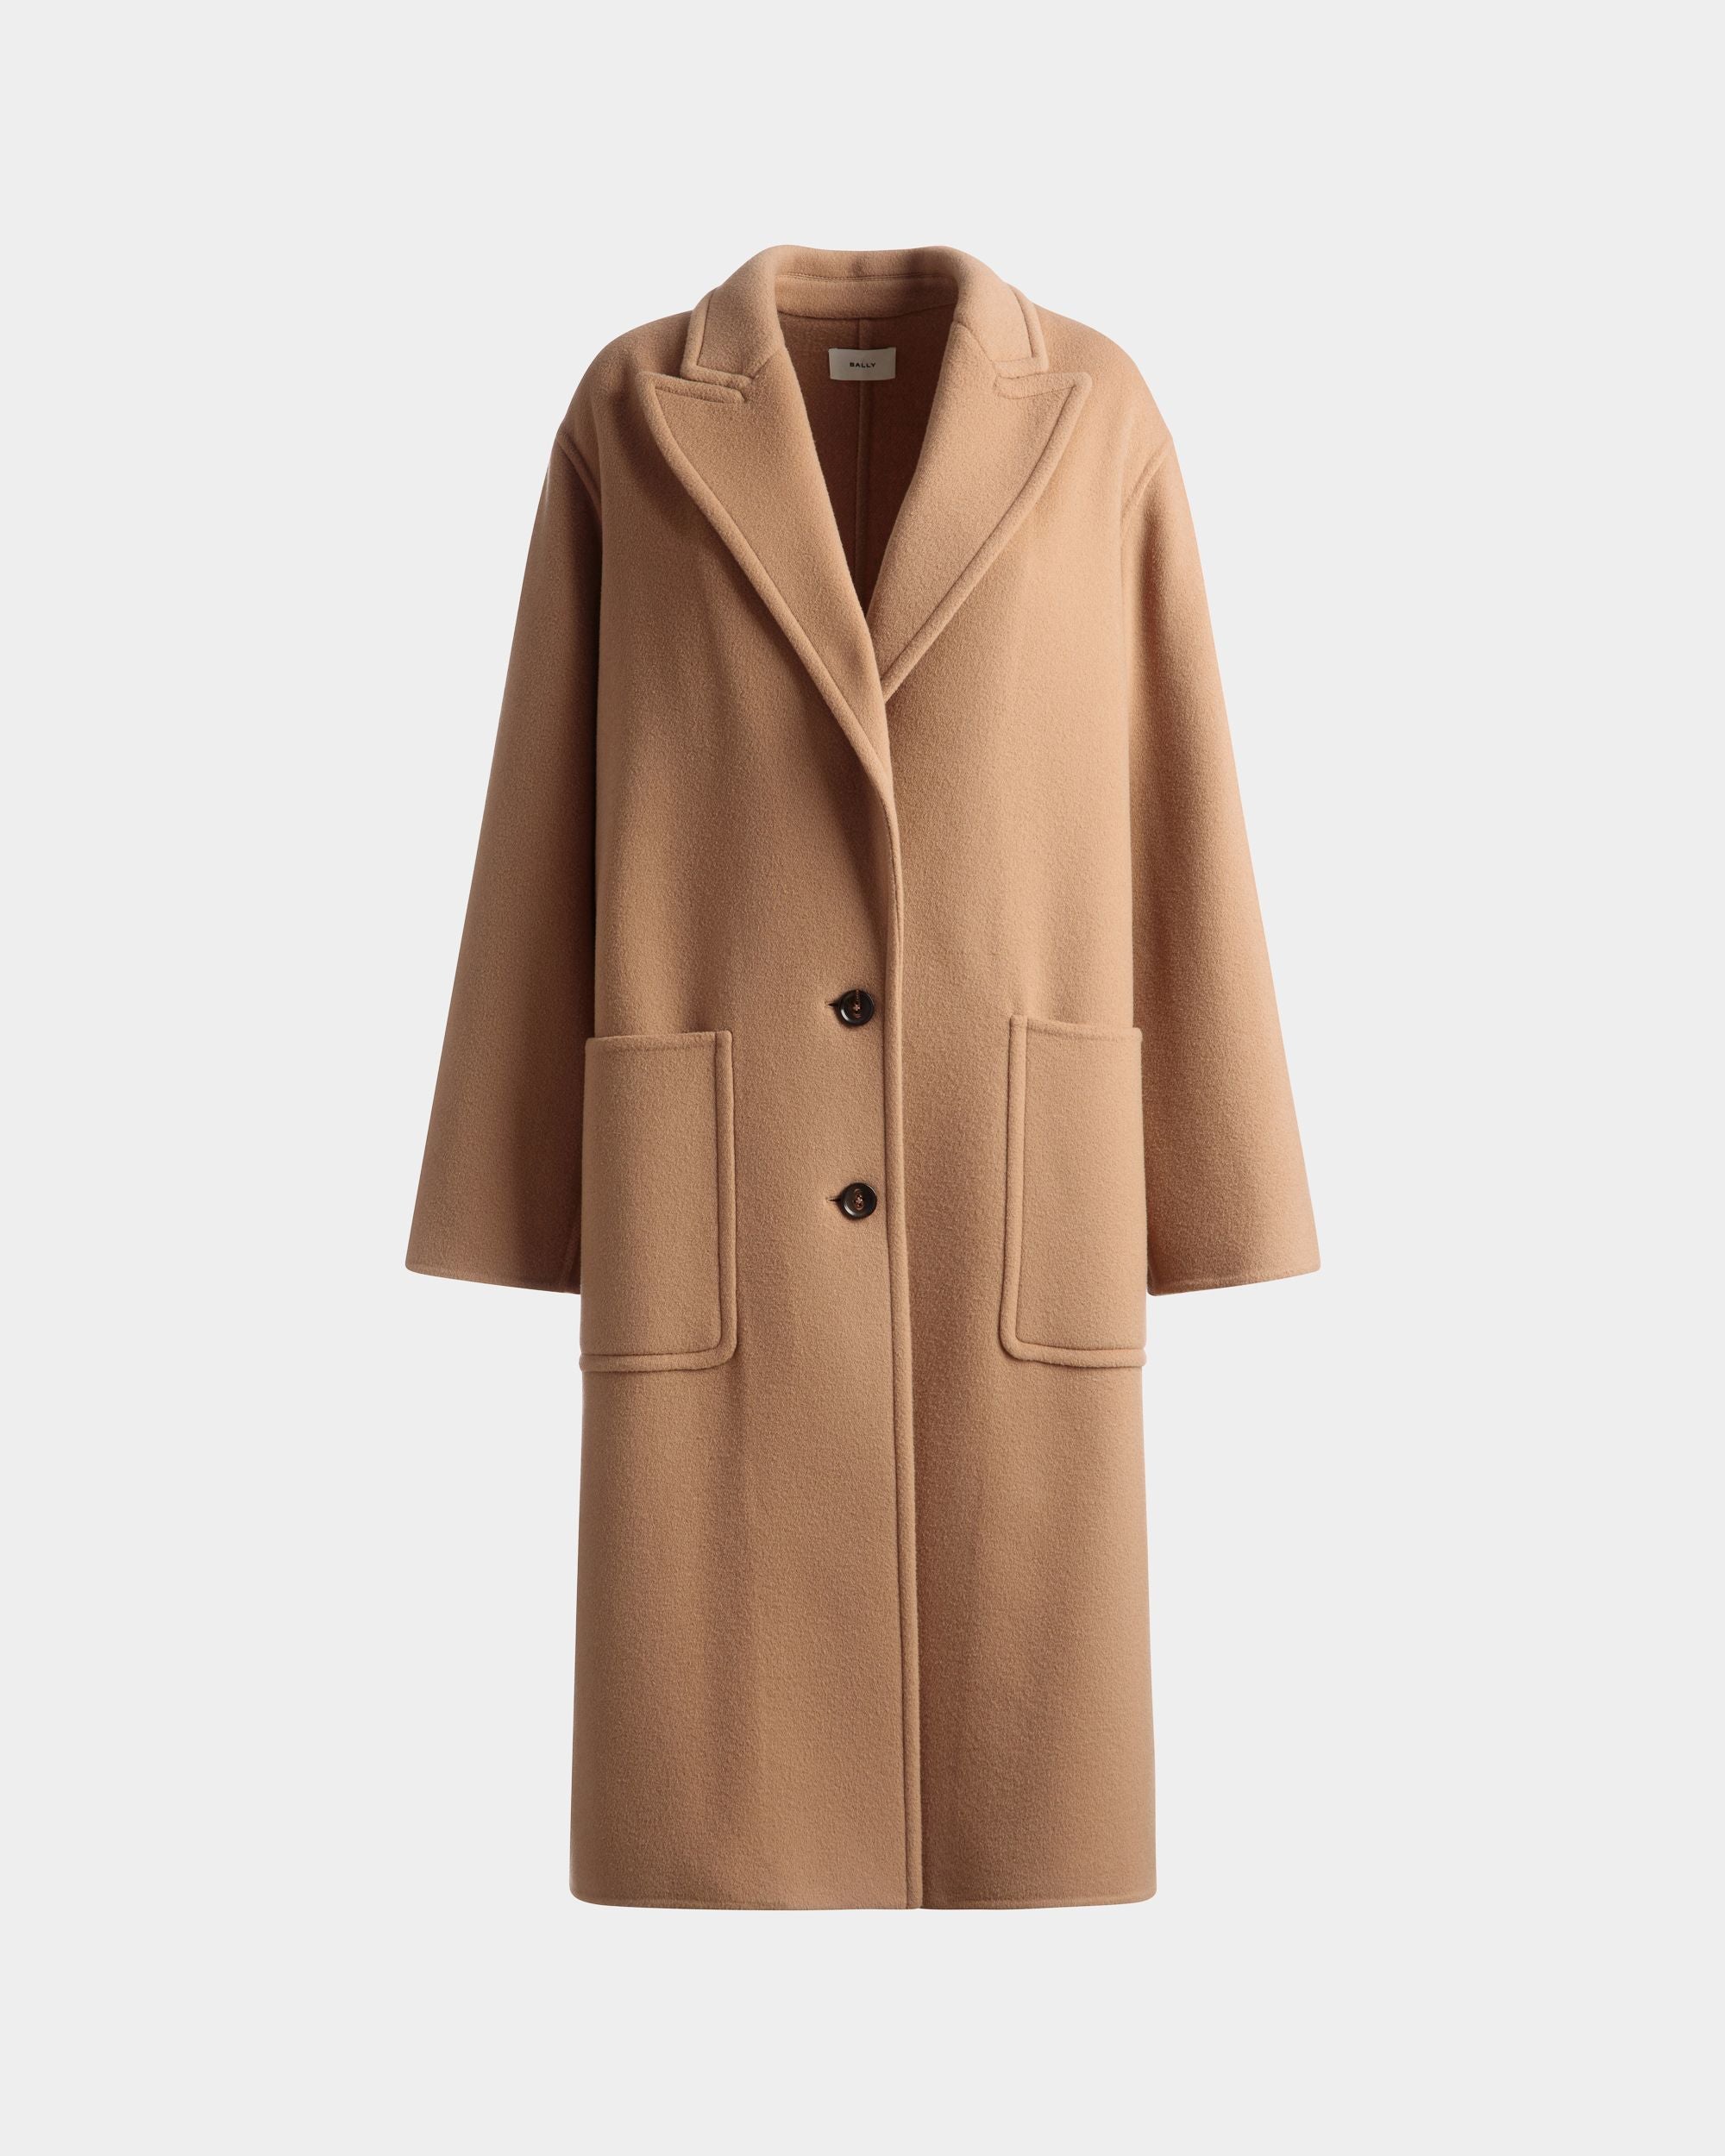 Einreihiger Mantel | Jacken und Mäntel für Damen | Kaschmir-Woll-Gemisch in Camel | Bally | Still Life Vorderseite